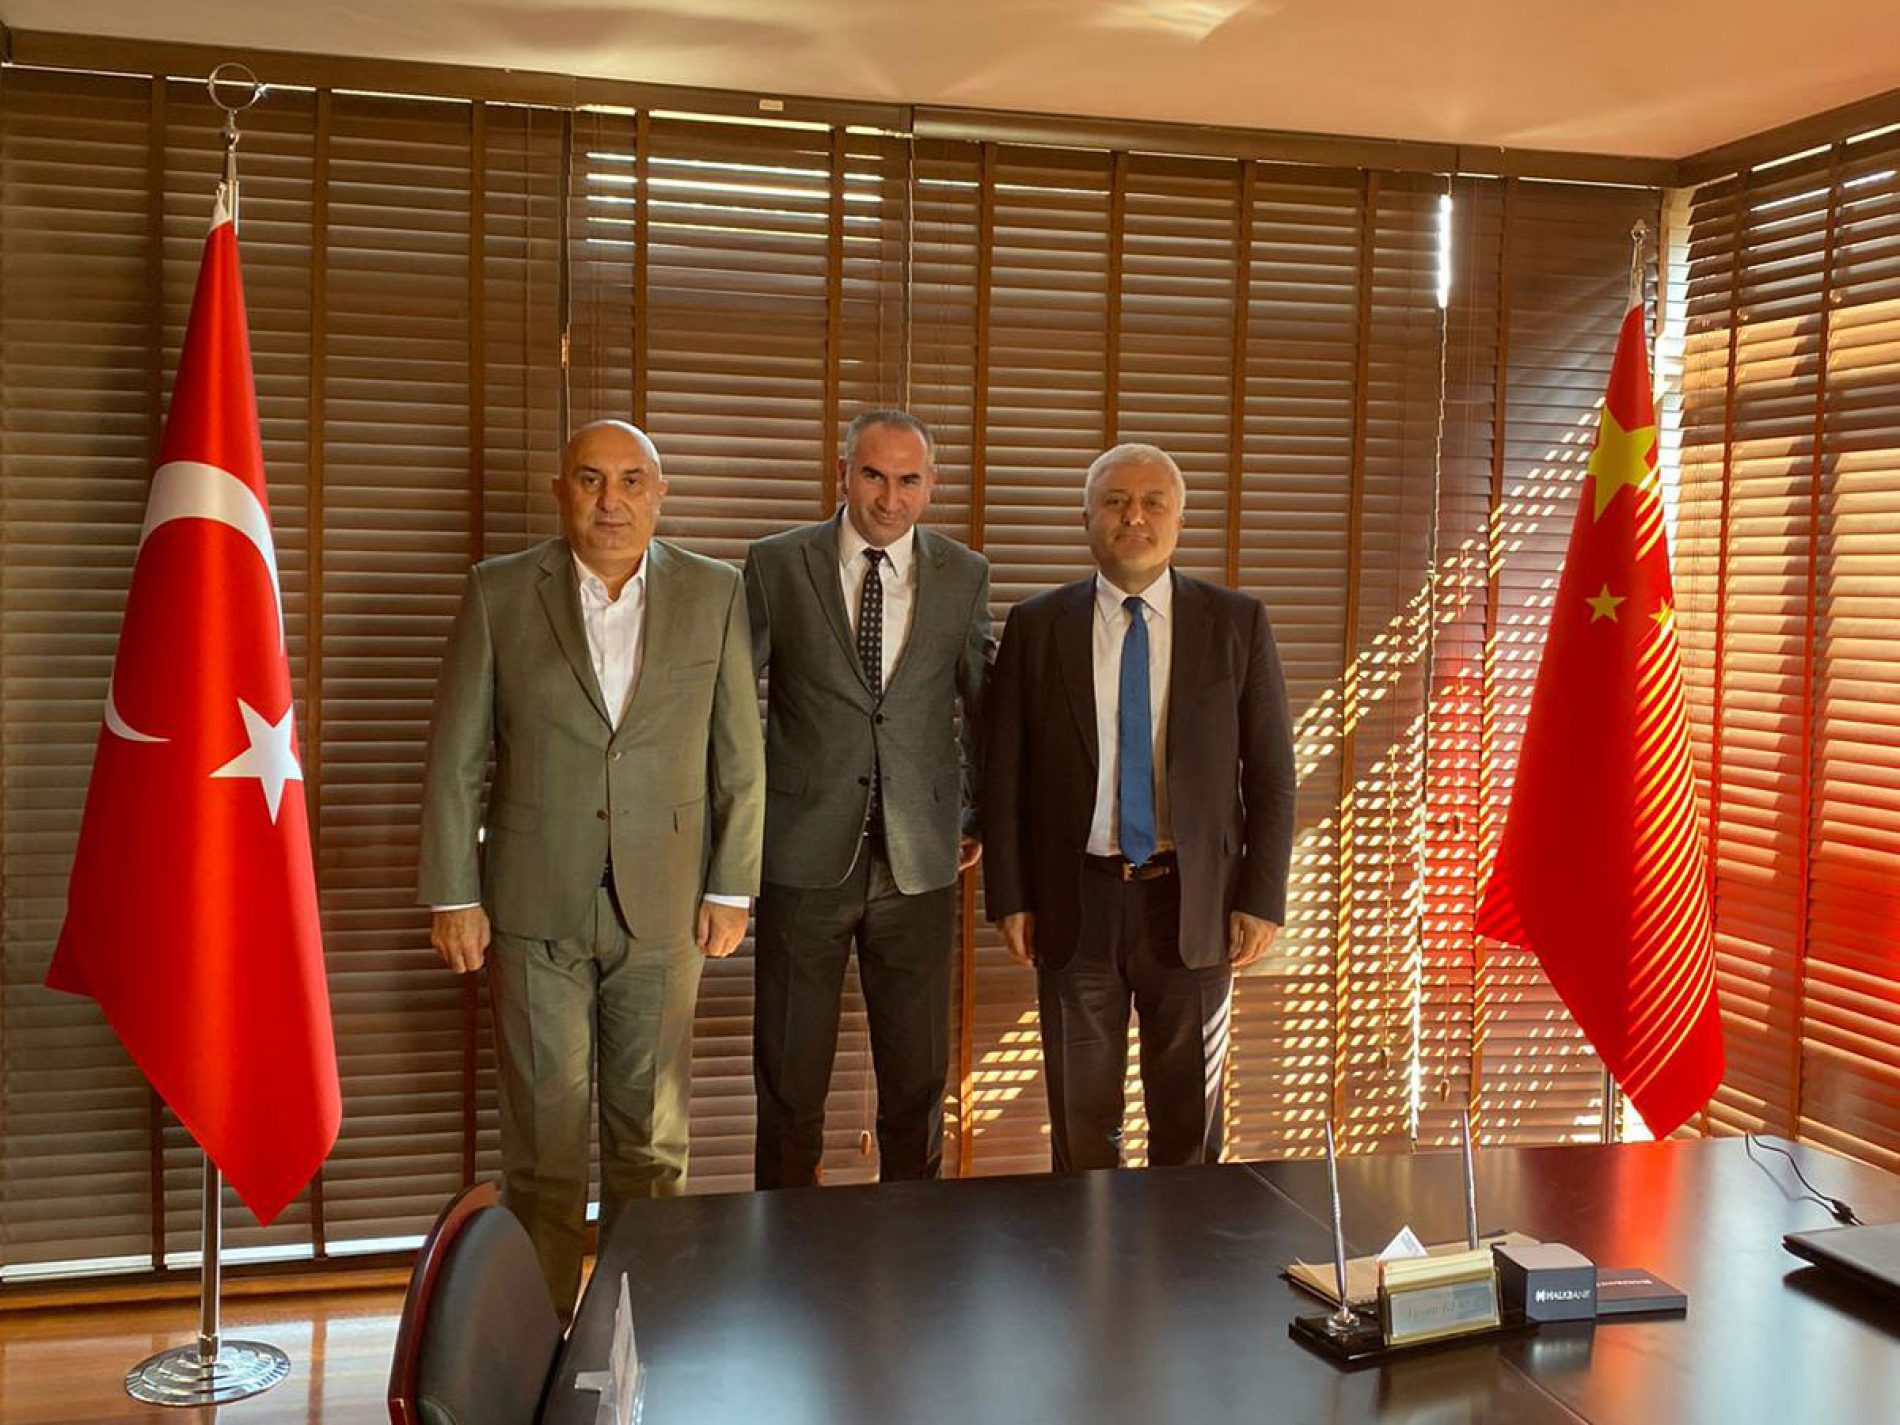 共和人民党副主席Tuncay ÖZKAN和党派代主席Mr. Engin ÖZKOÇ拜访了协会会长İhsan BEŞER